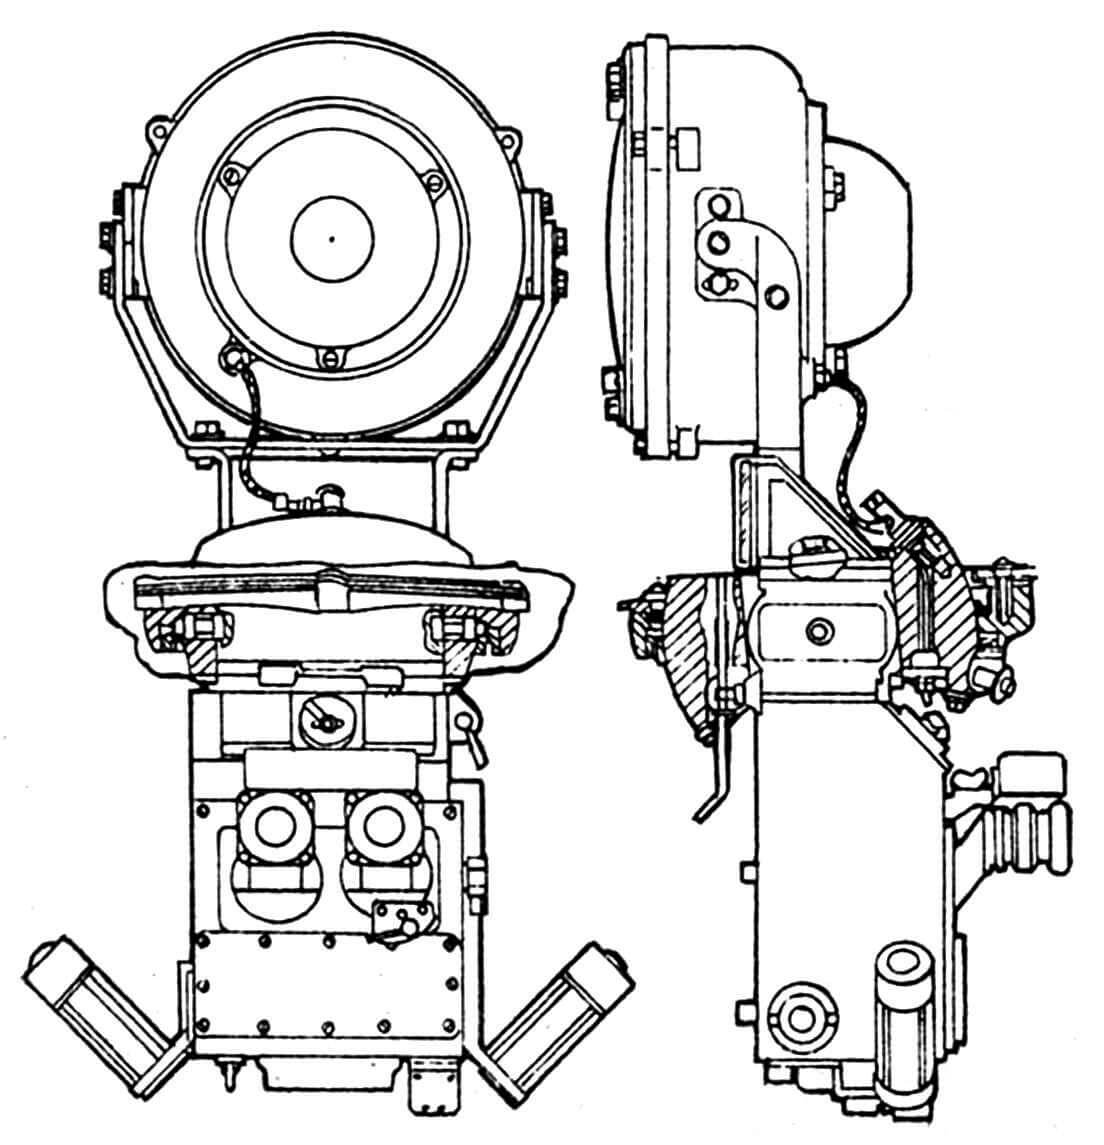 Комбинированный прибор наблюдения ТКН-3 командира машины.